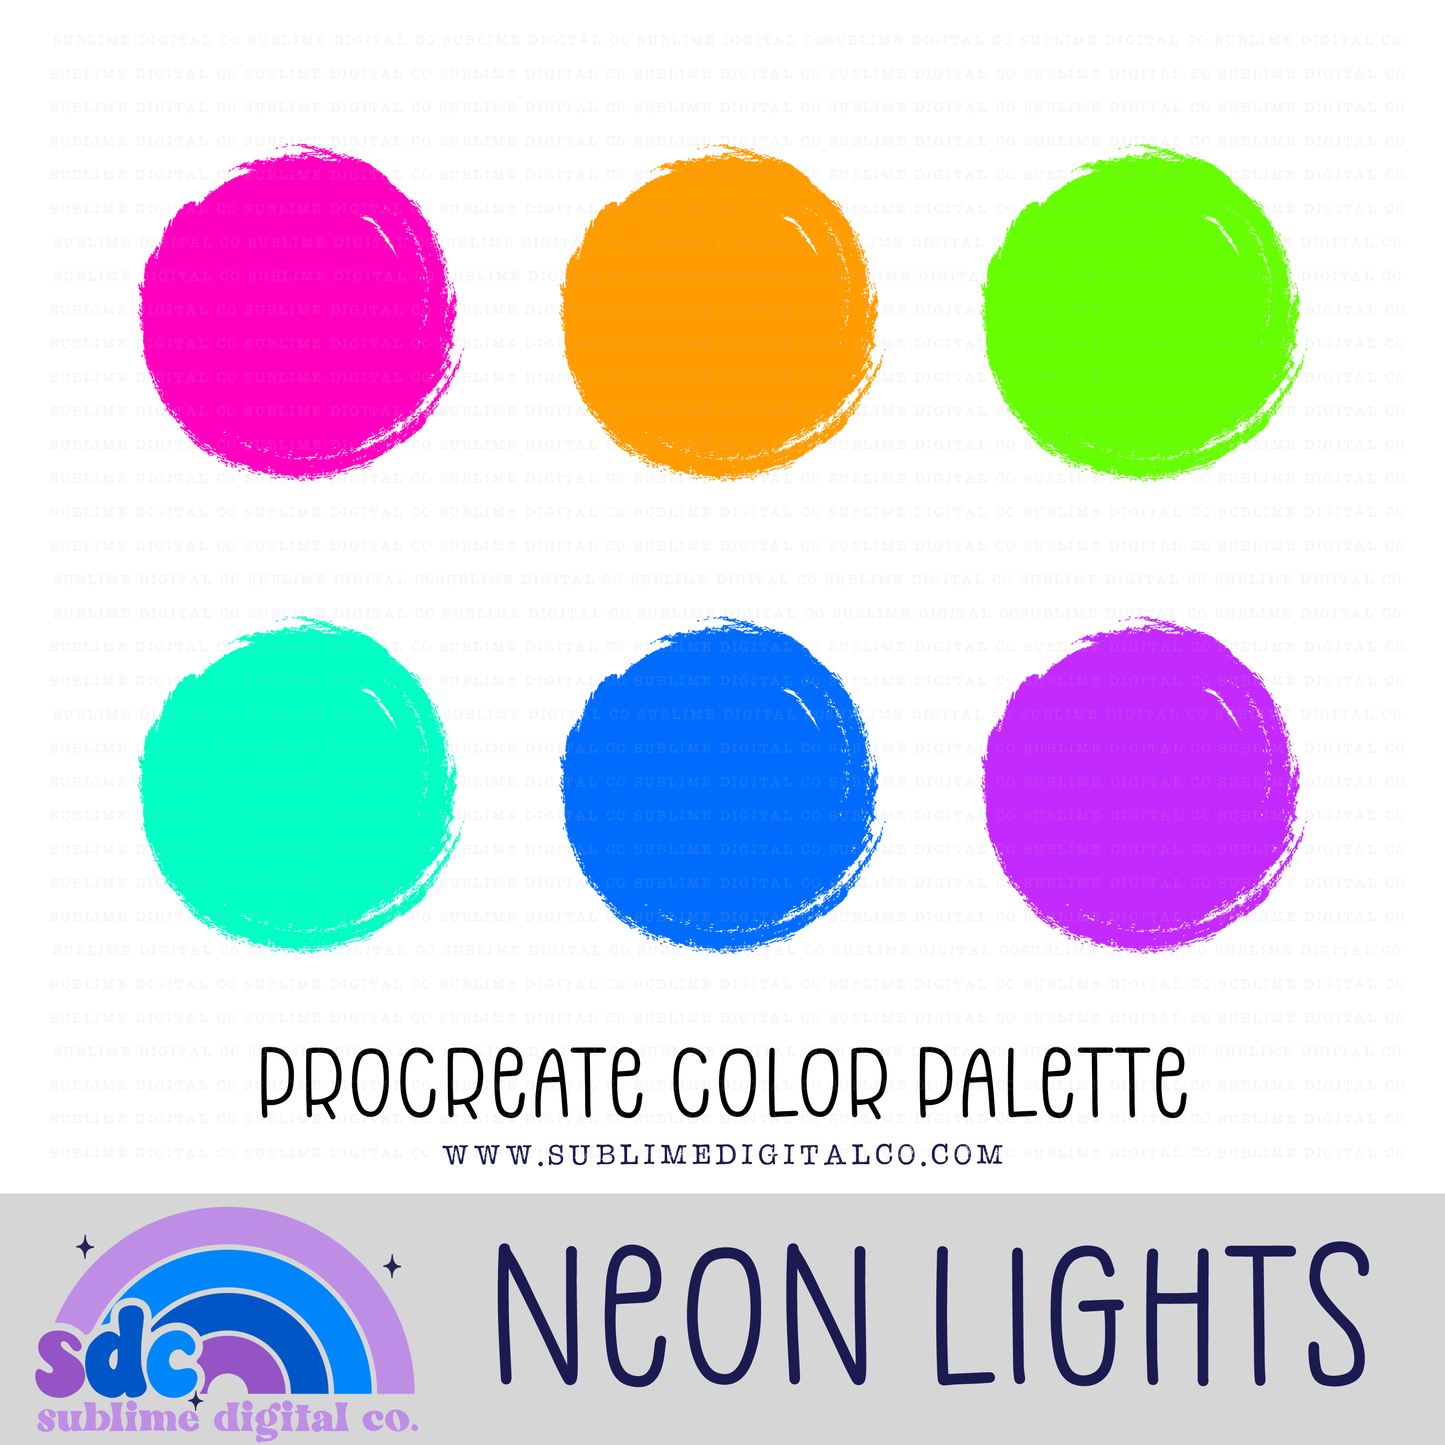 Procreate Color Palettes Drive